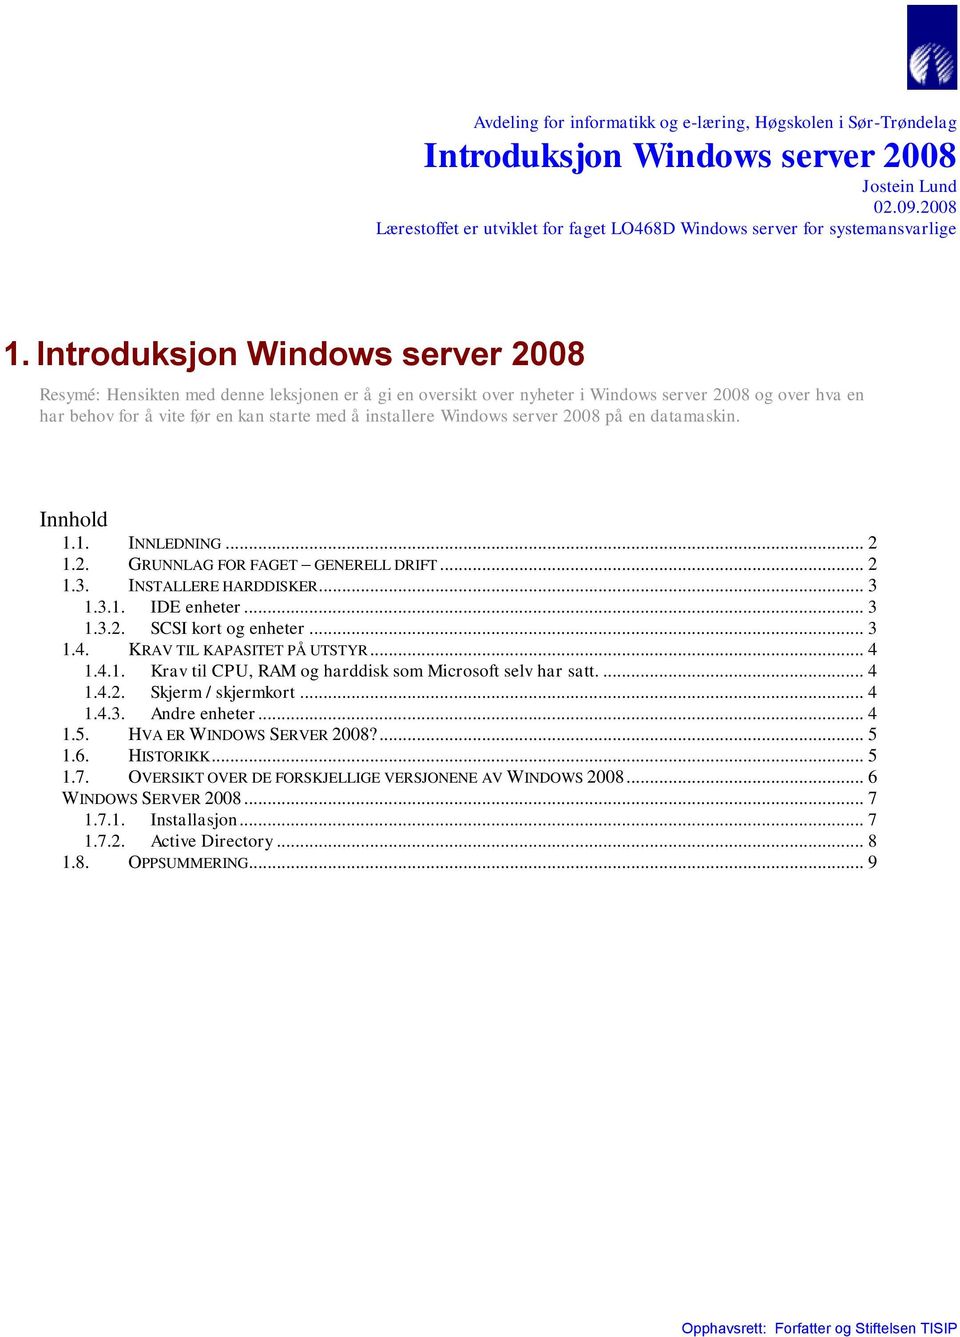 Windows server 2008 på en datamaskin. Innhold 1.1. INNLEDNING... 2 1.2. GRUNNLAG FOR FAGET GENERELL DRIFT... 2 1.3. INSTALLERE HARDDISKER... 3 1.3.1. IDE enheter... 3 1.3.2. SCSI kort og enheter... 3 1.4.